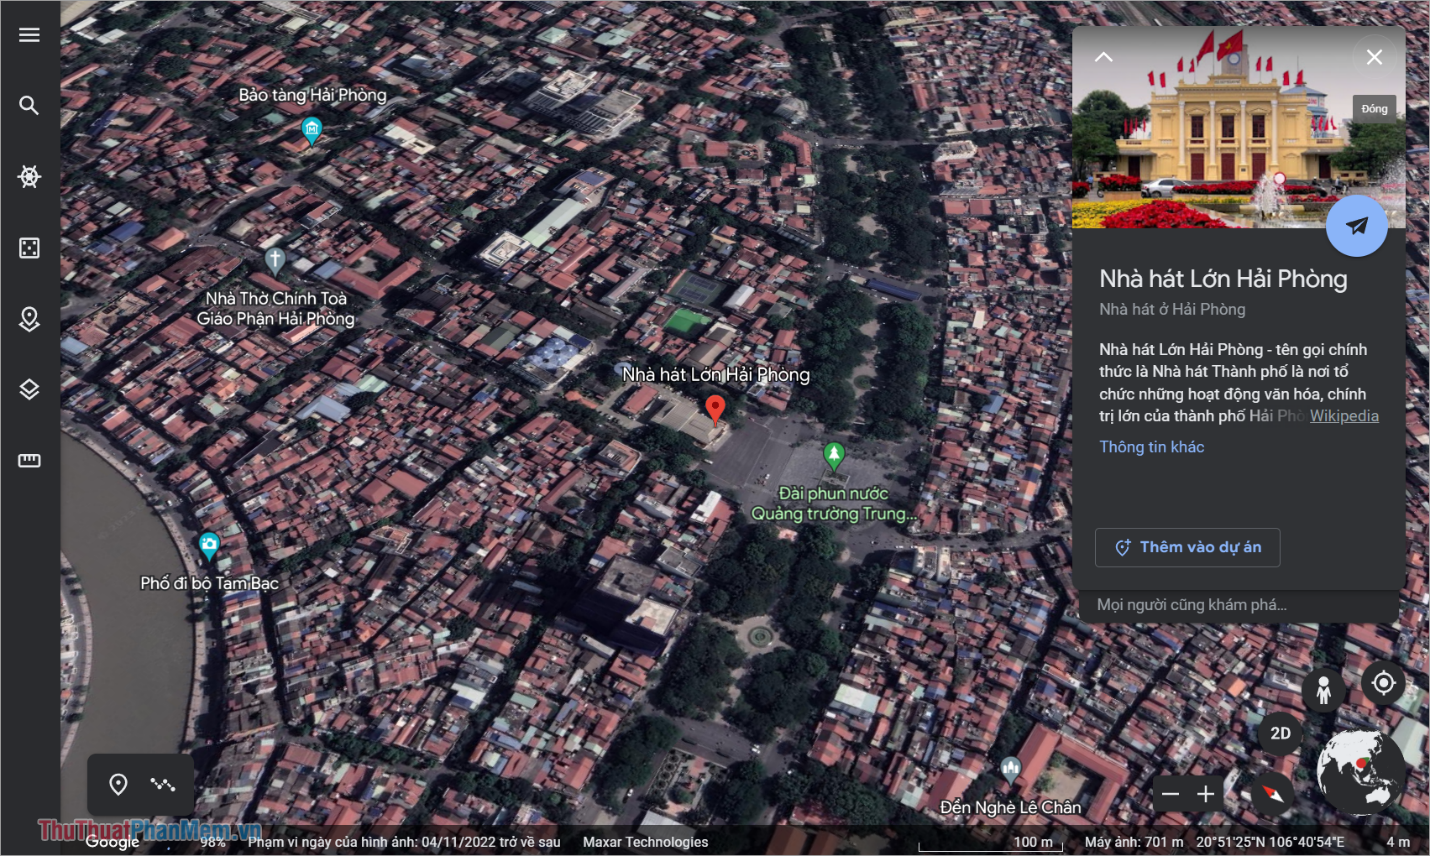 Google Earth sẽ tiến hành áp dụng bản đồ 3D đưa ra cho bạn những thông tin chi tiết nhất về địa điểm đó trên bản đồ